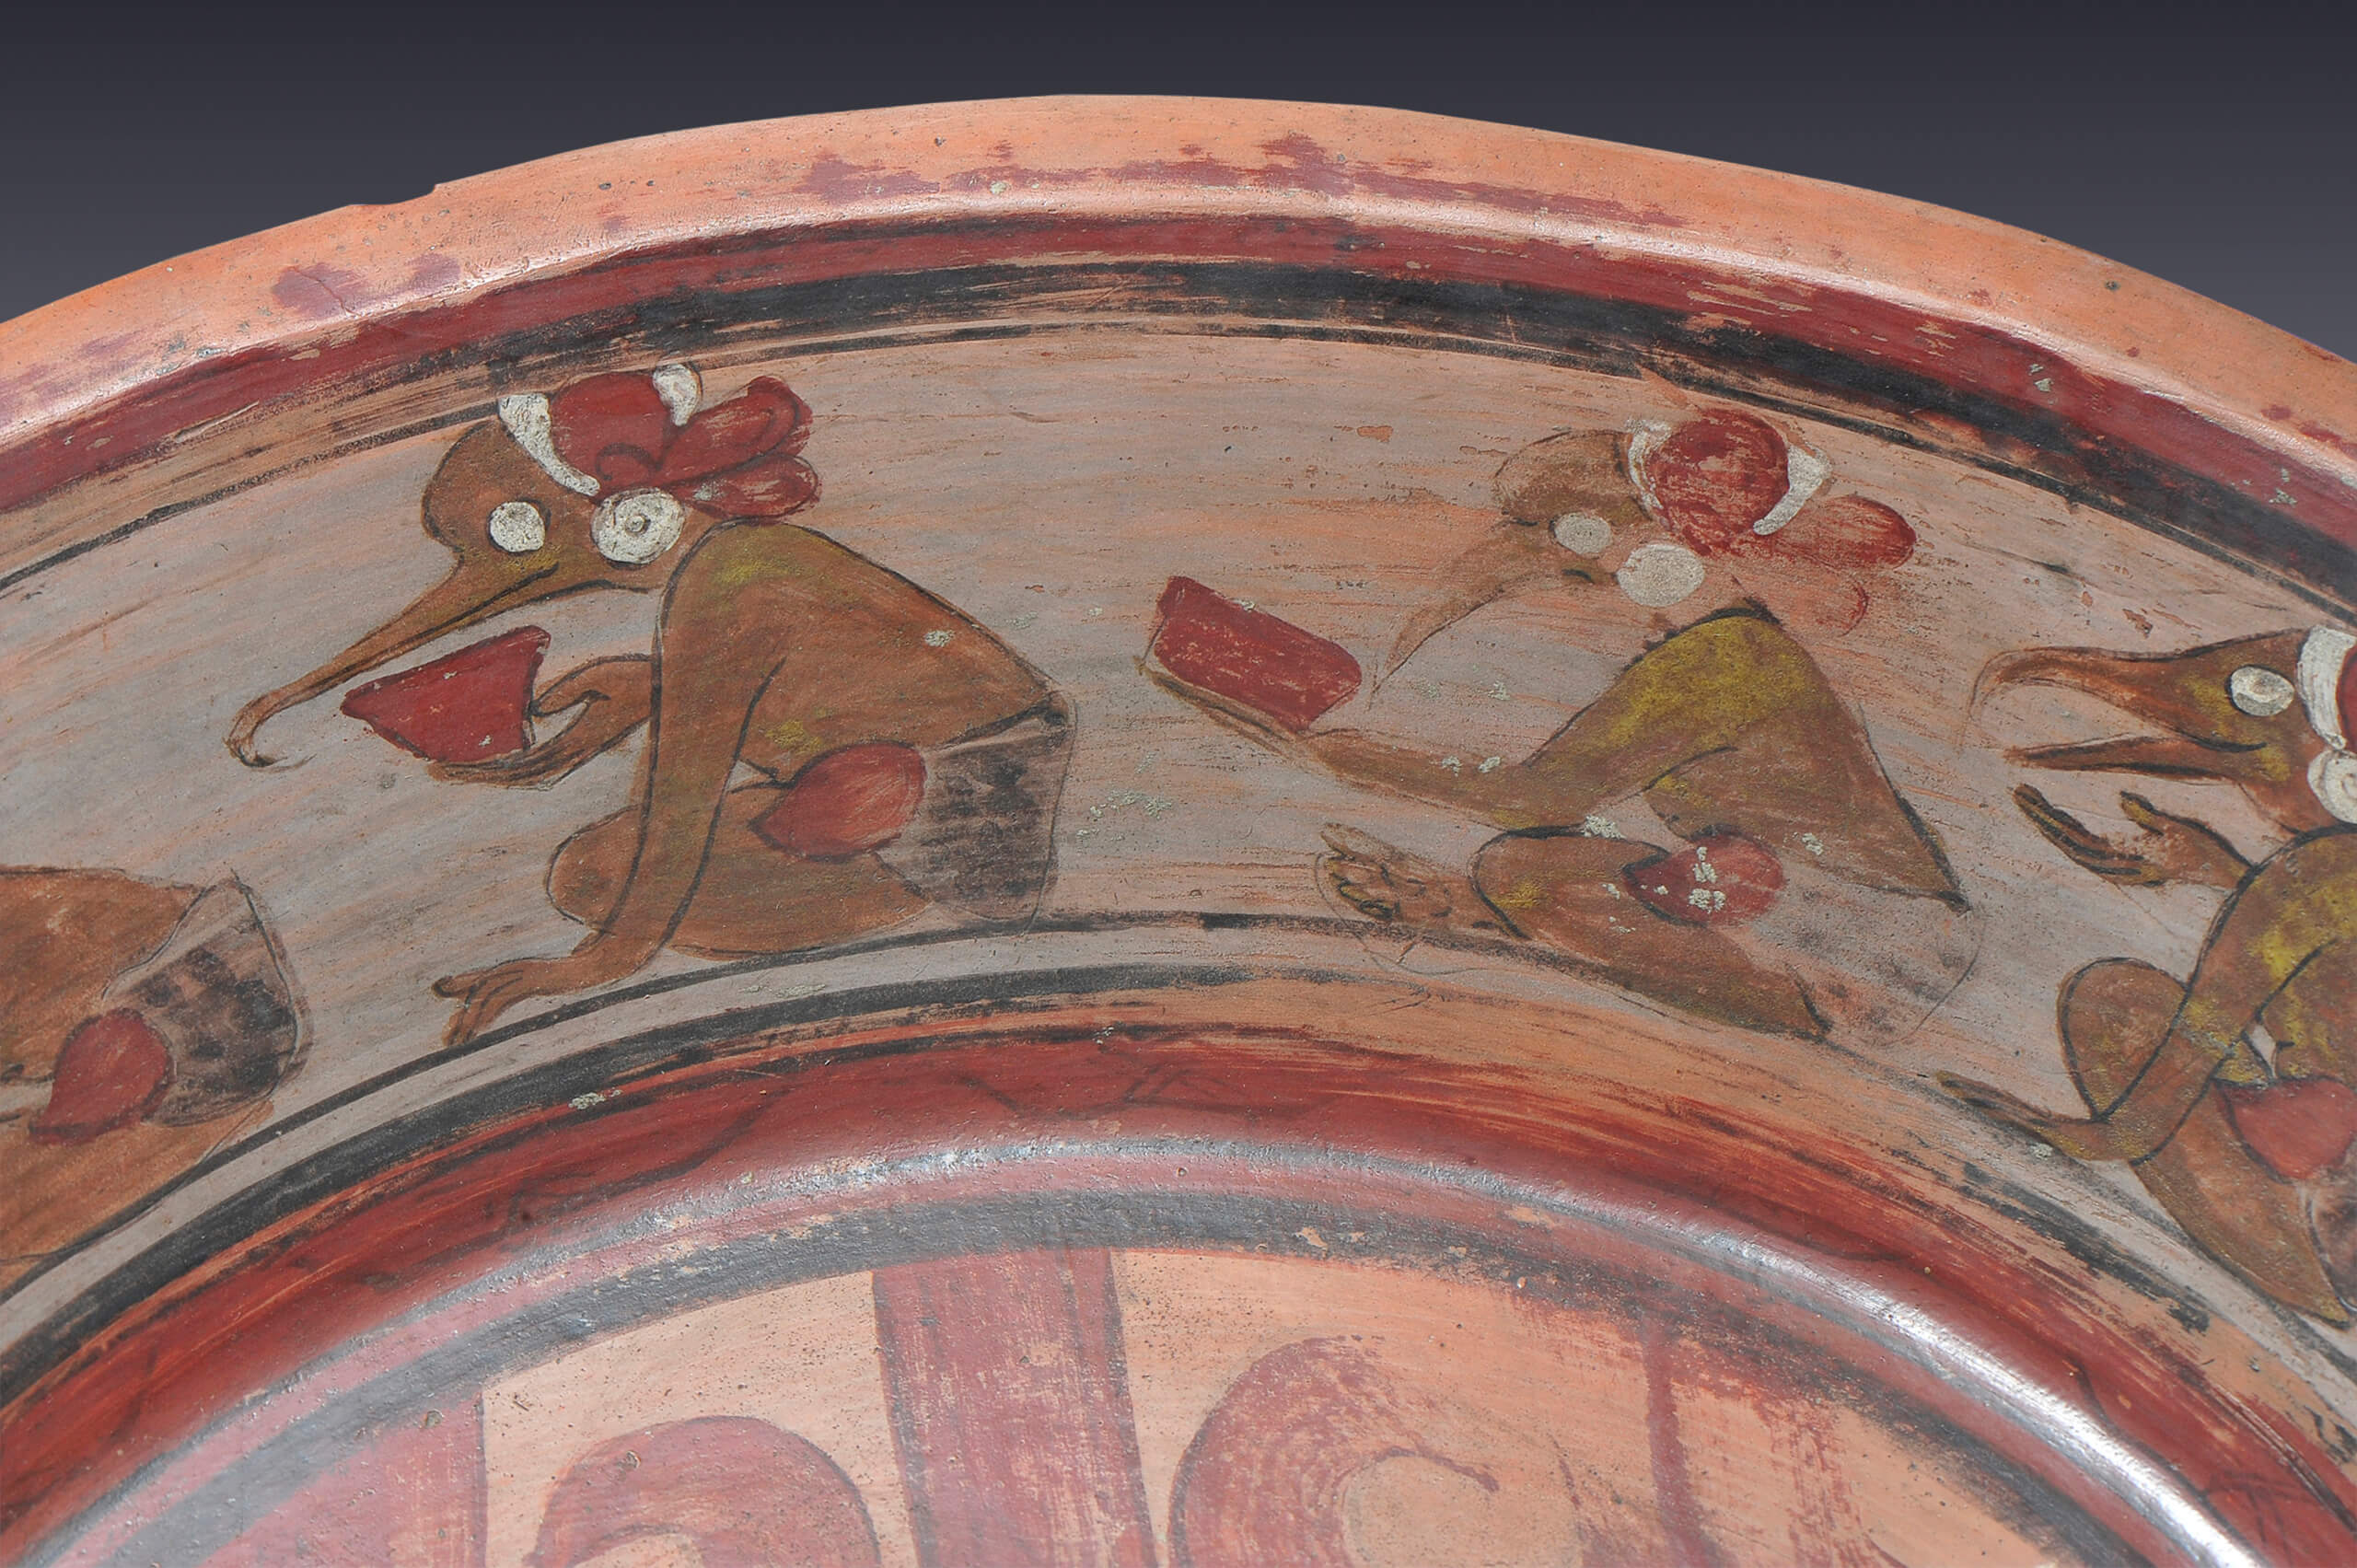 Plato con sacerdote y aves en el borde | El México antiguo. Salas de Arte Prehispánico | Museo Amparo, Puebla